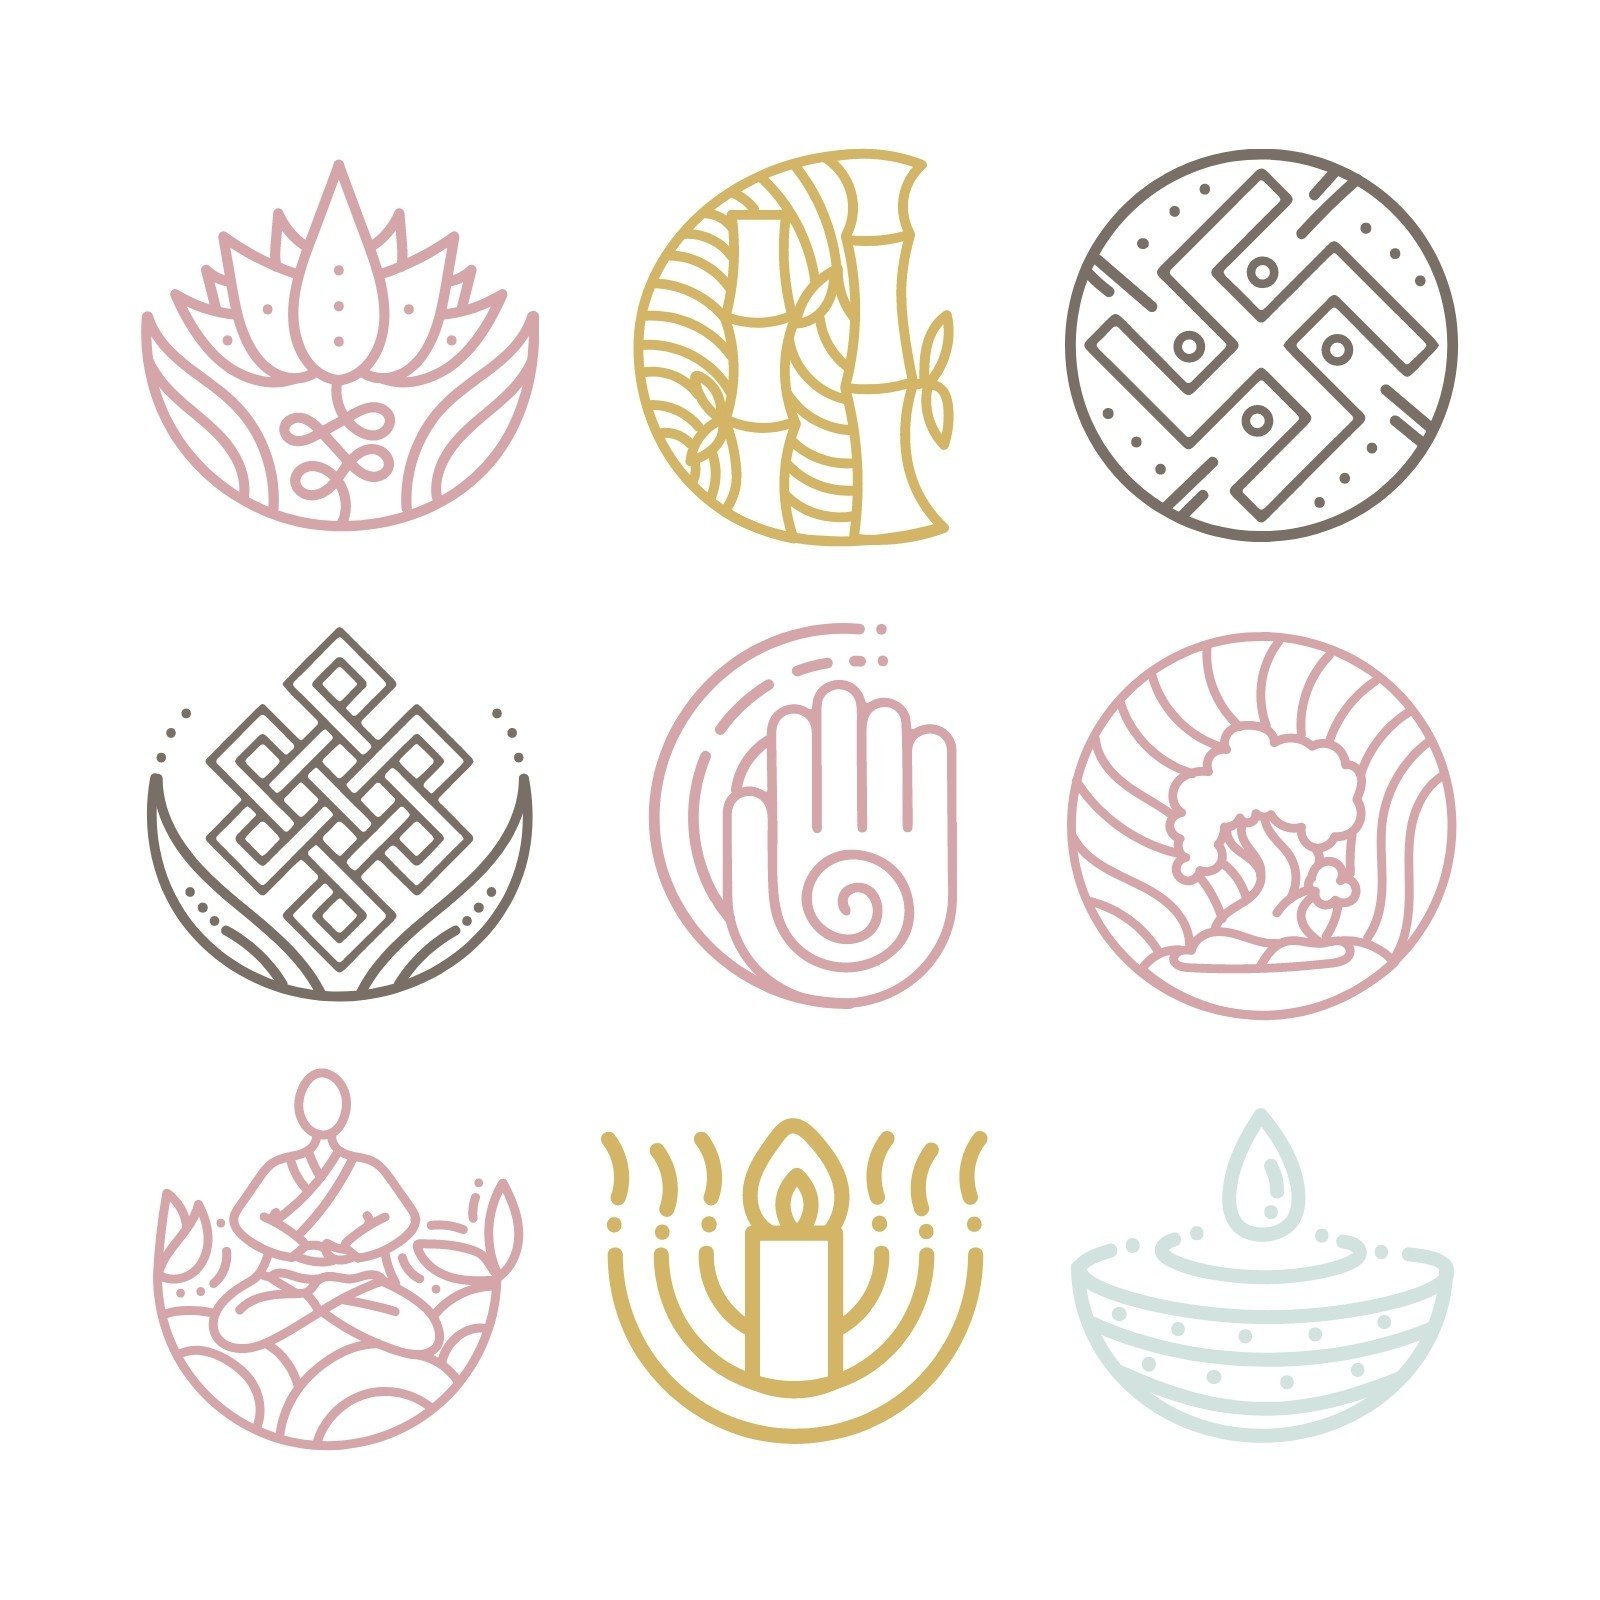 佛教符号图案大全图片